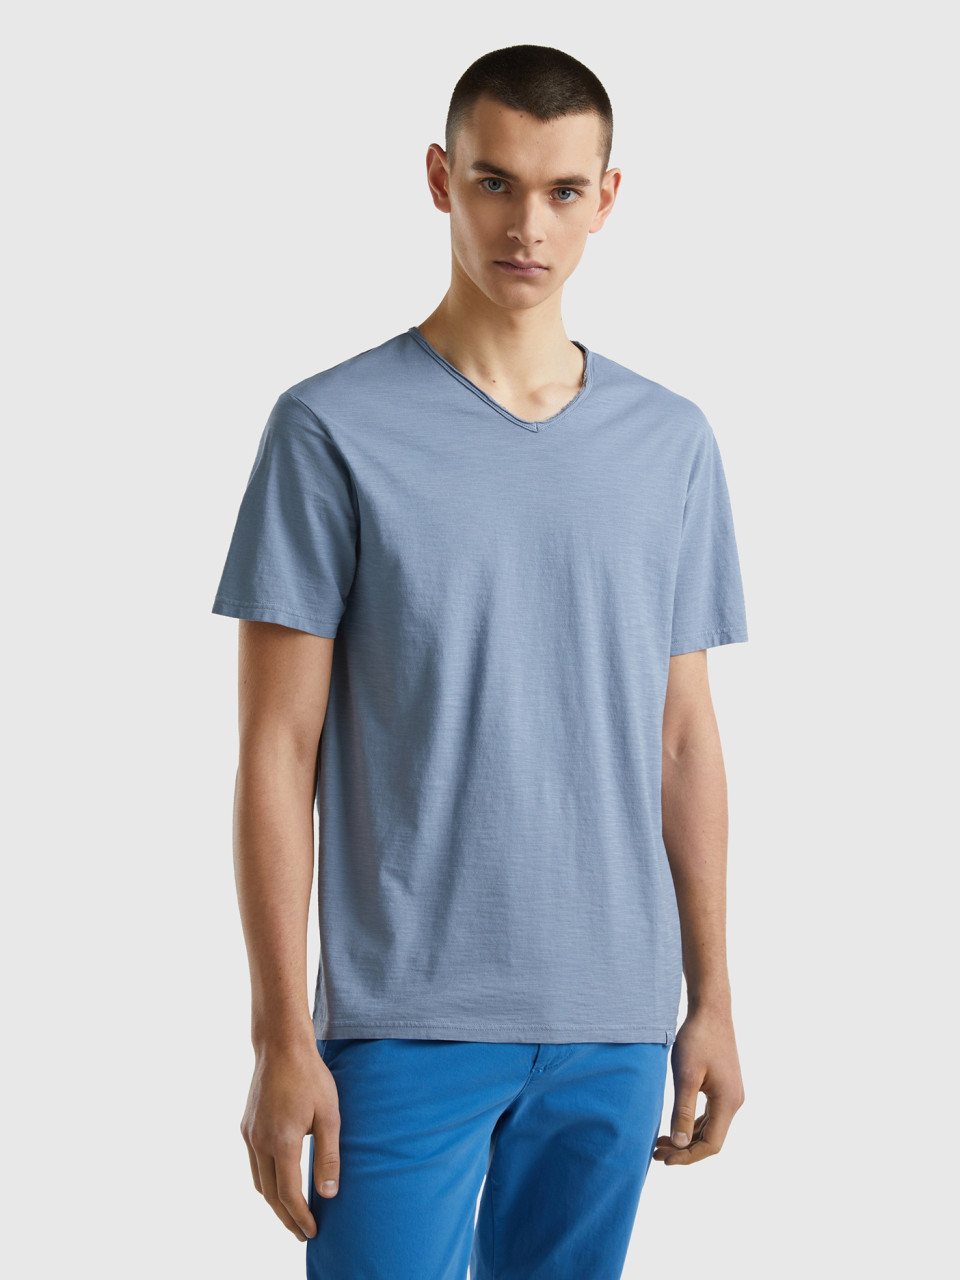 Benetton, Camiseta De 100 % Algodón Con Escote De Pico, Azul Grisáceo, Hombre